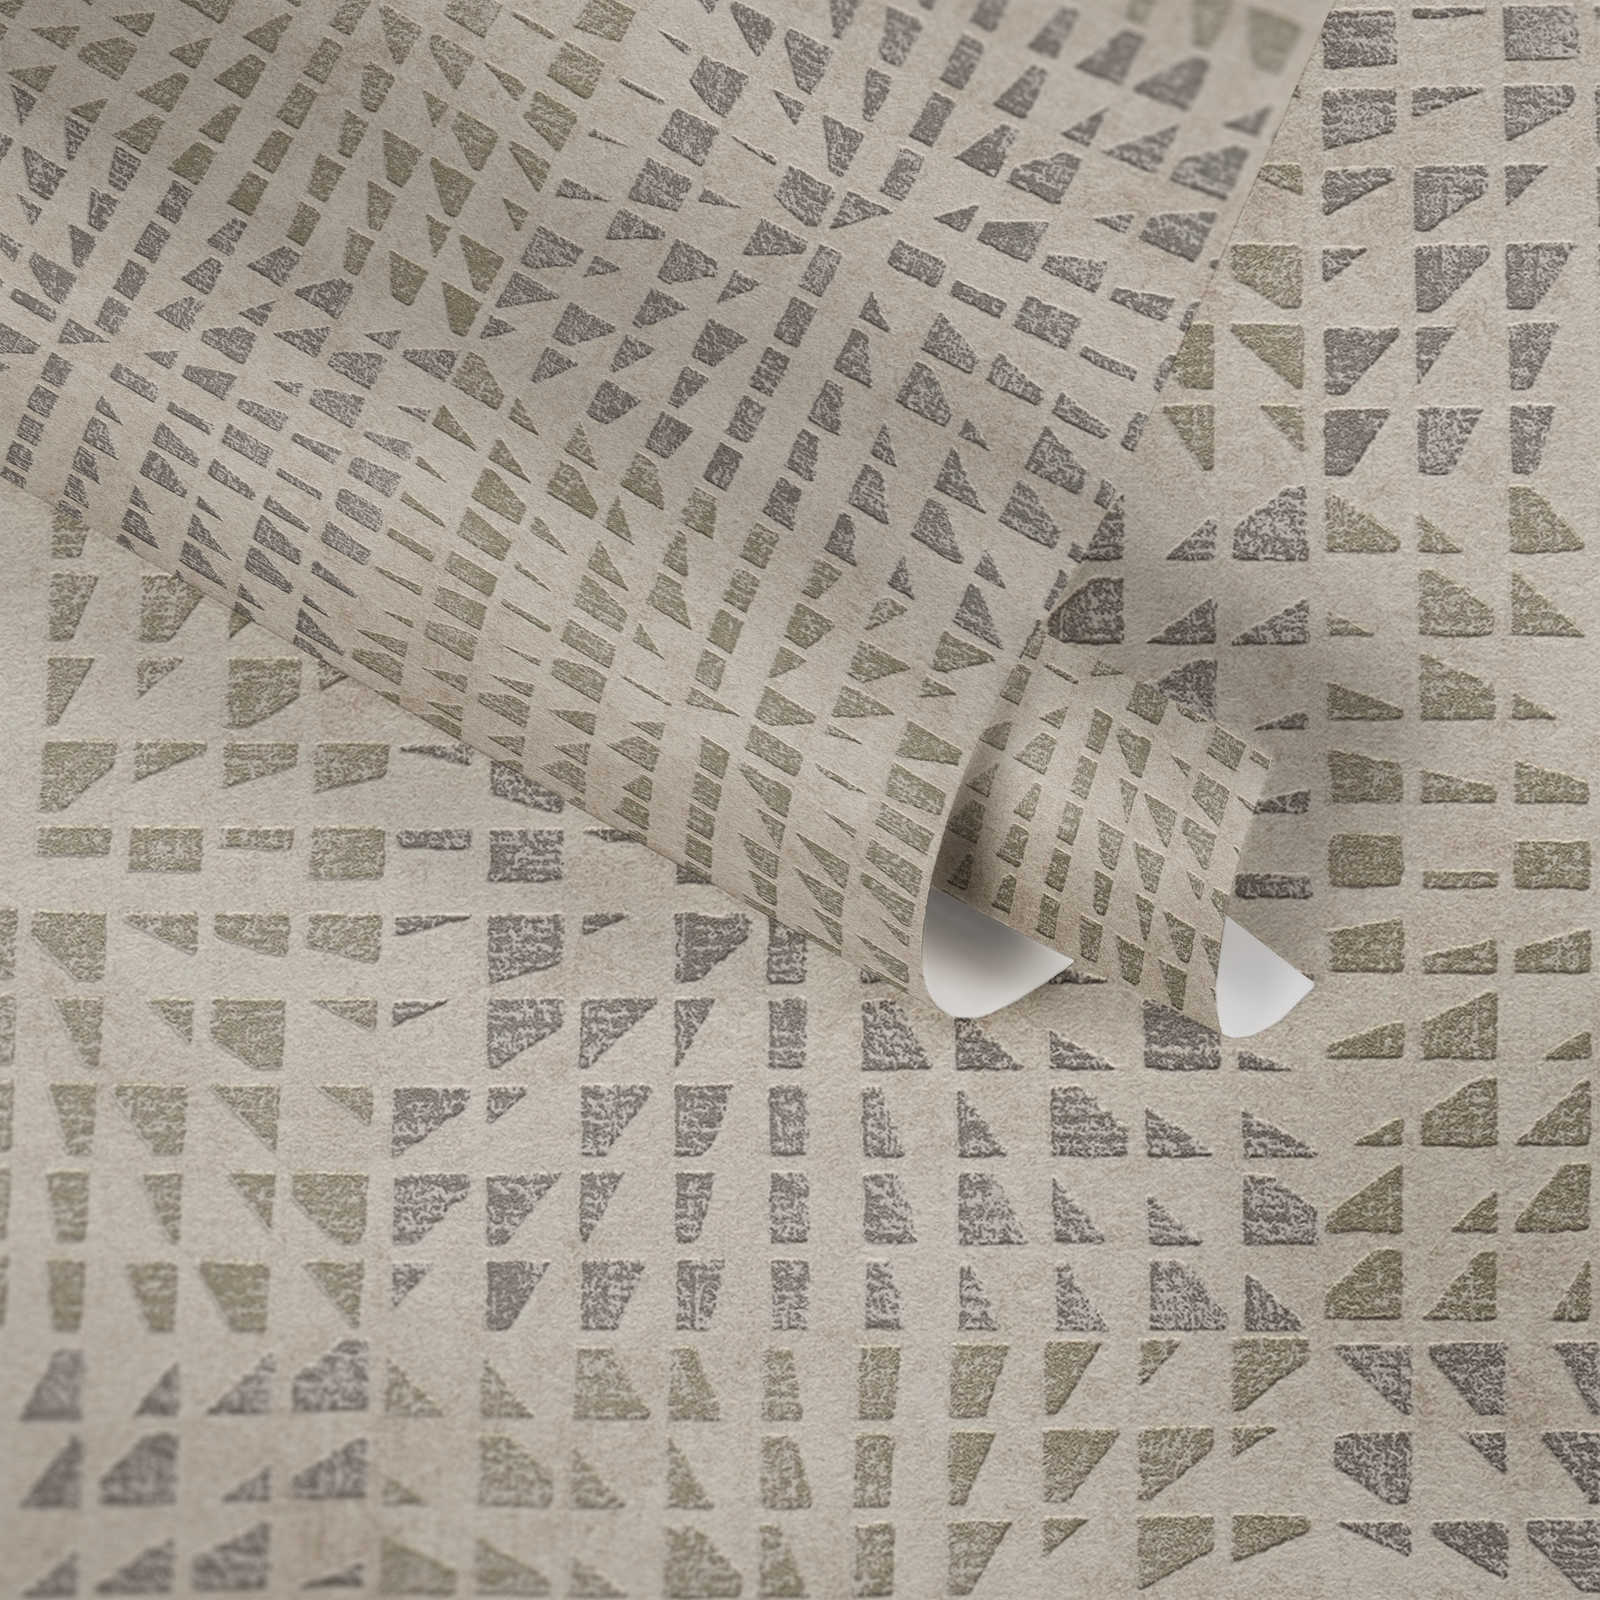             Ethno behang met structuurpatroon & mozaïekeffect - grijs, beige
        